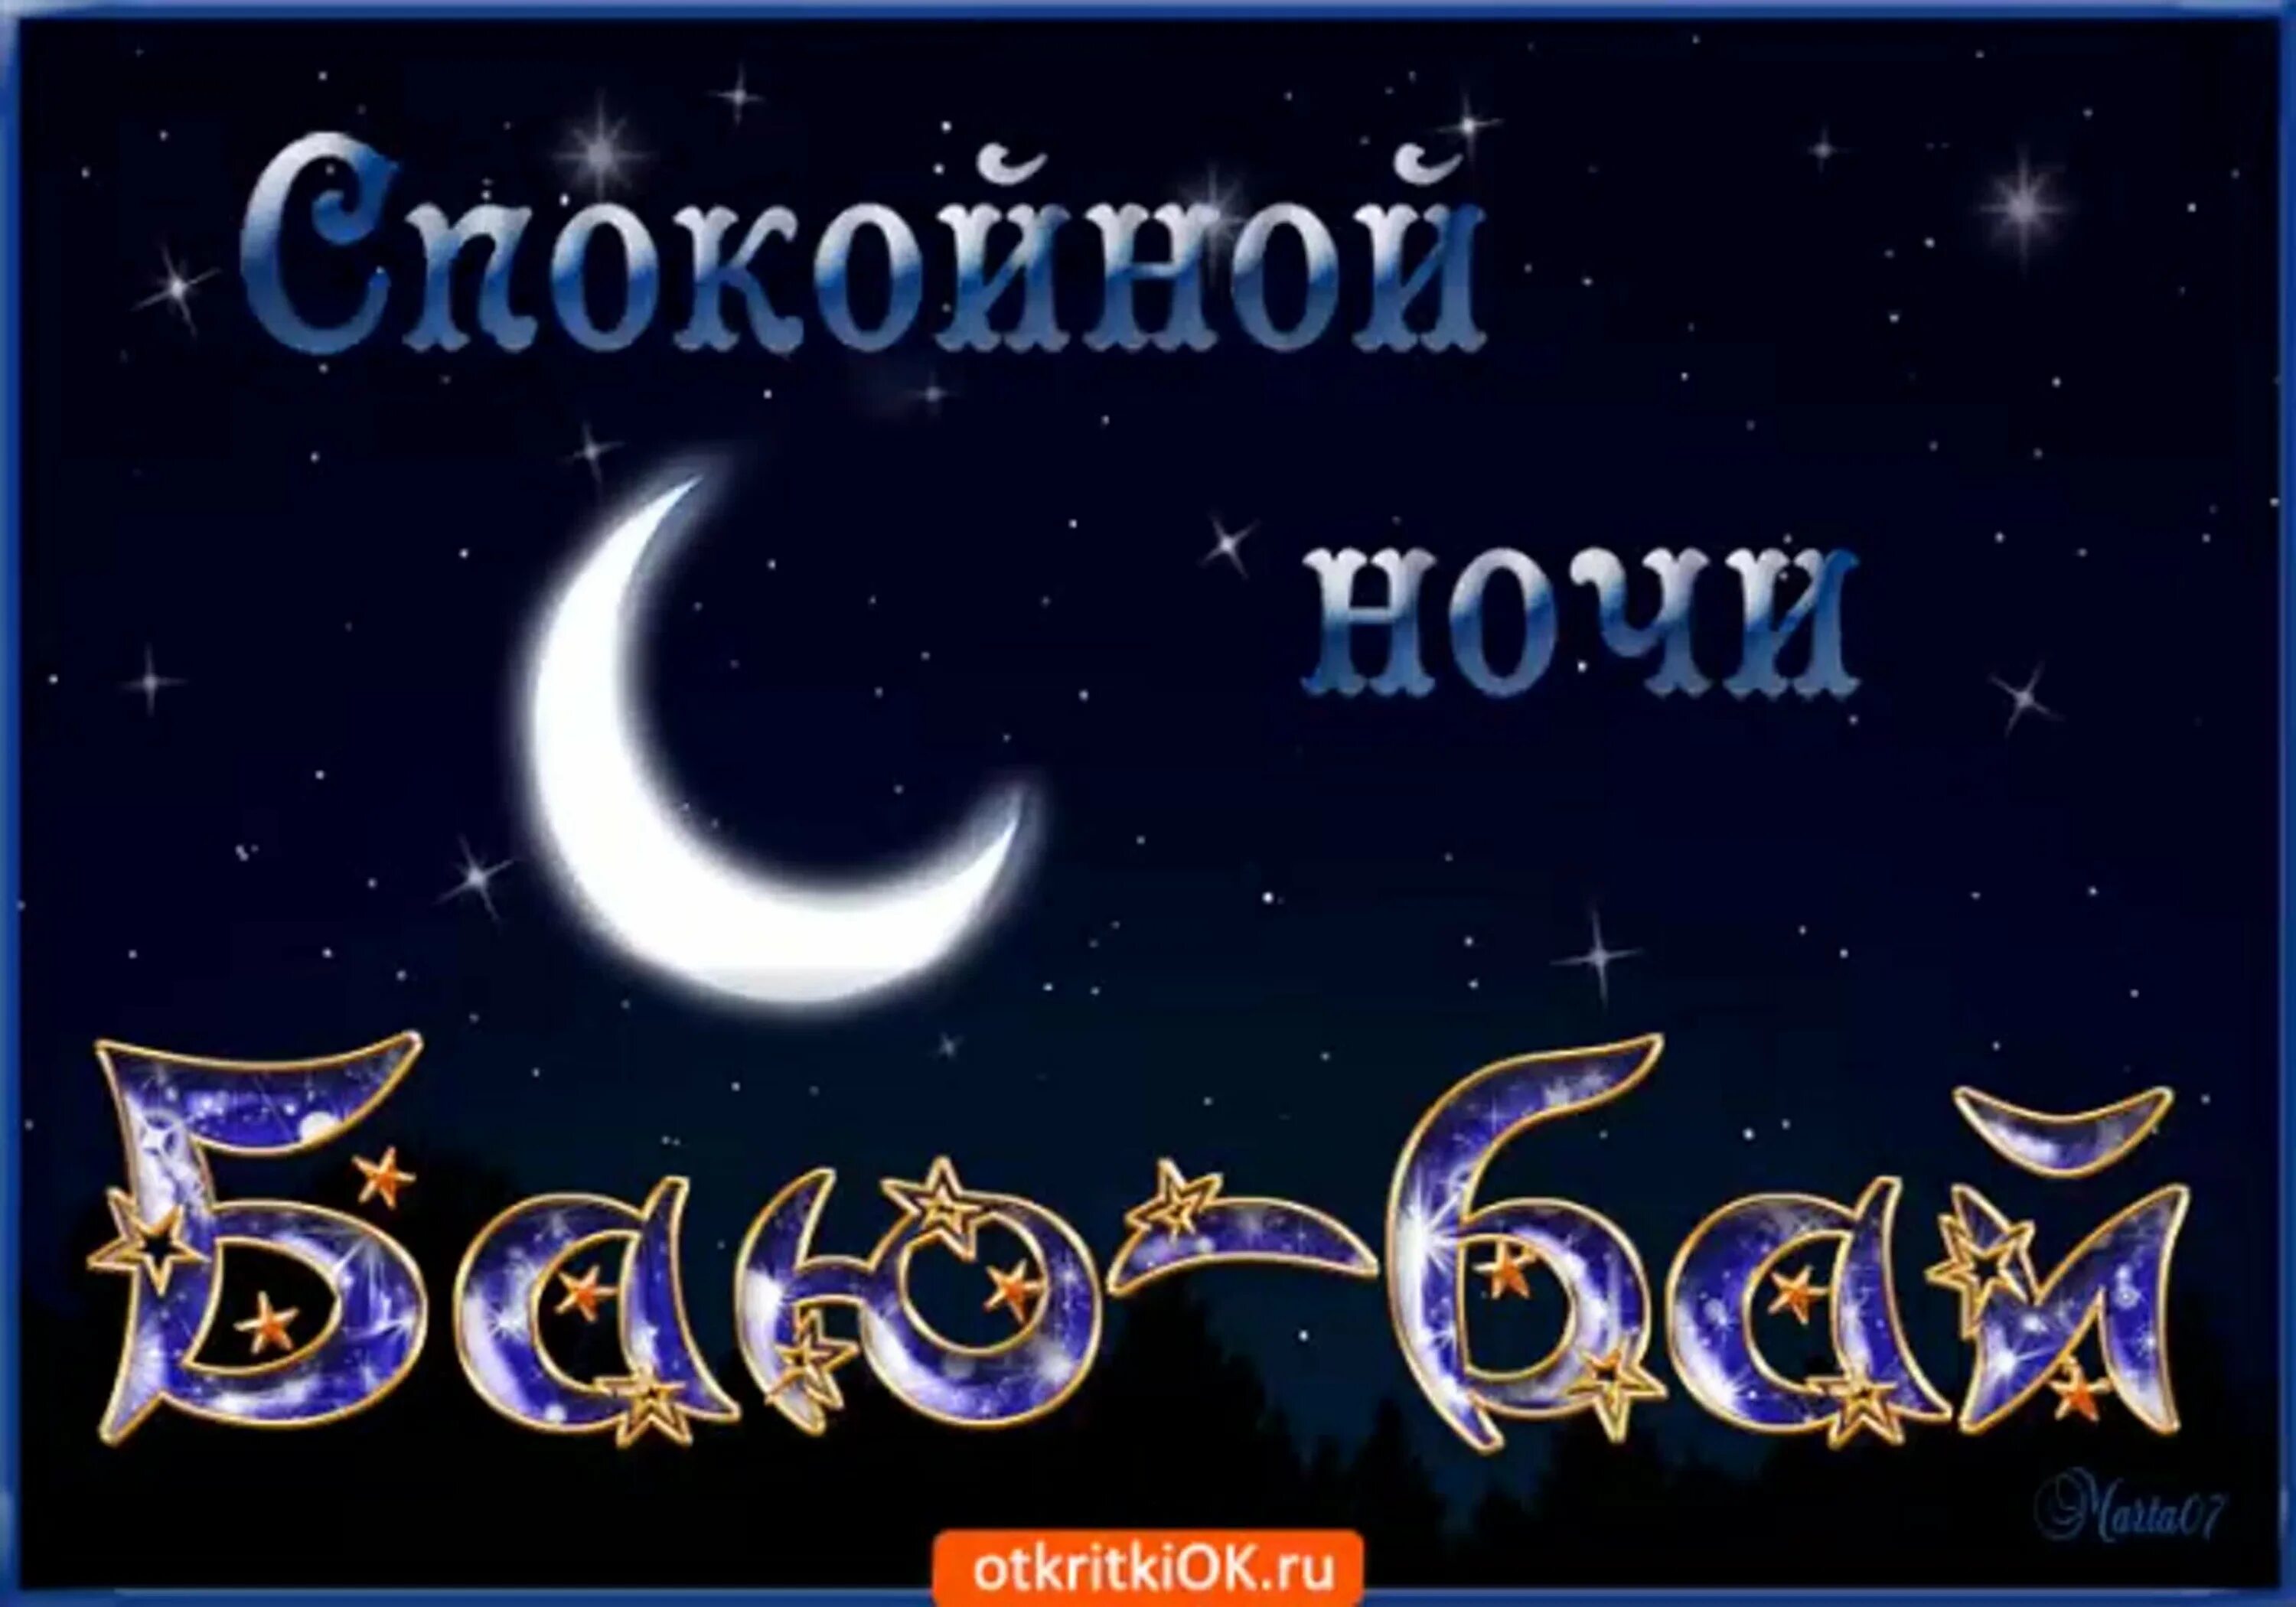 Вечером на украинском языке. Открытки спокойной ночи. Пожелания доброй ночи. Доброй ночи картинки. Спокойной ночи картинки красивые.